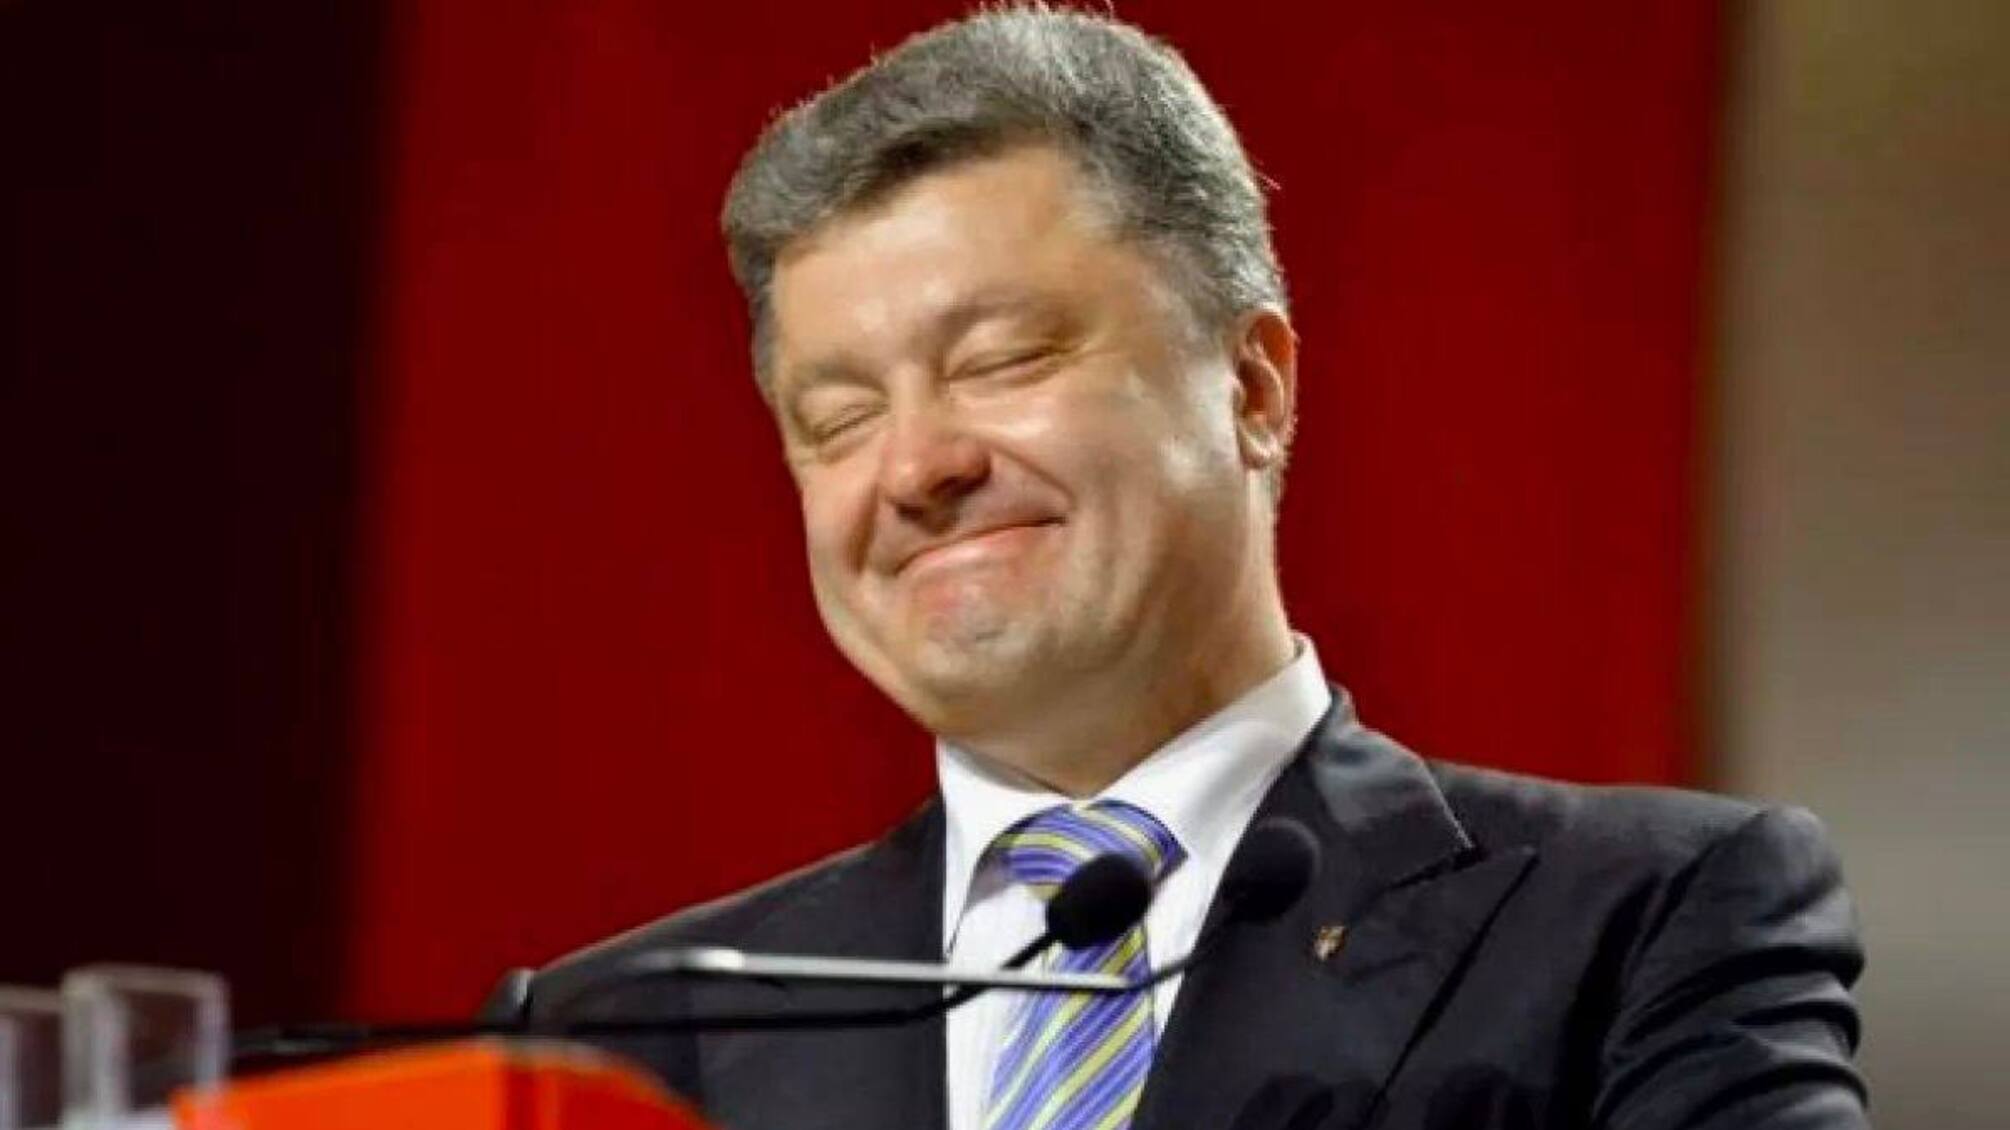 Благодаря своему банку Порошенко может обогатиться на 50 млн грн за счет донатов украинцев